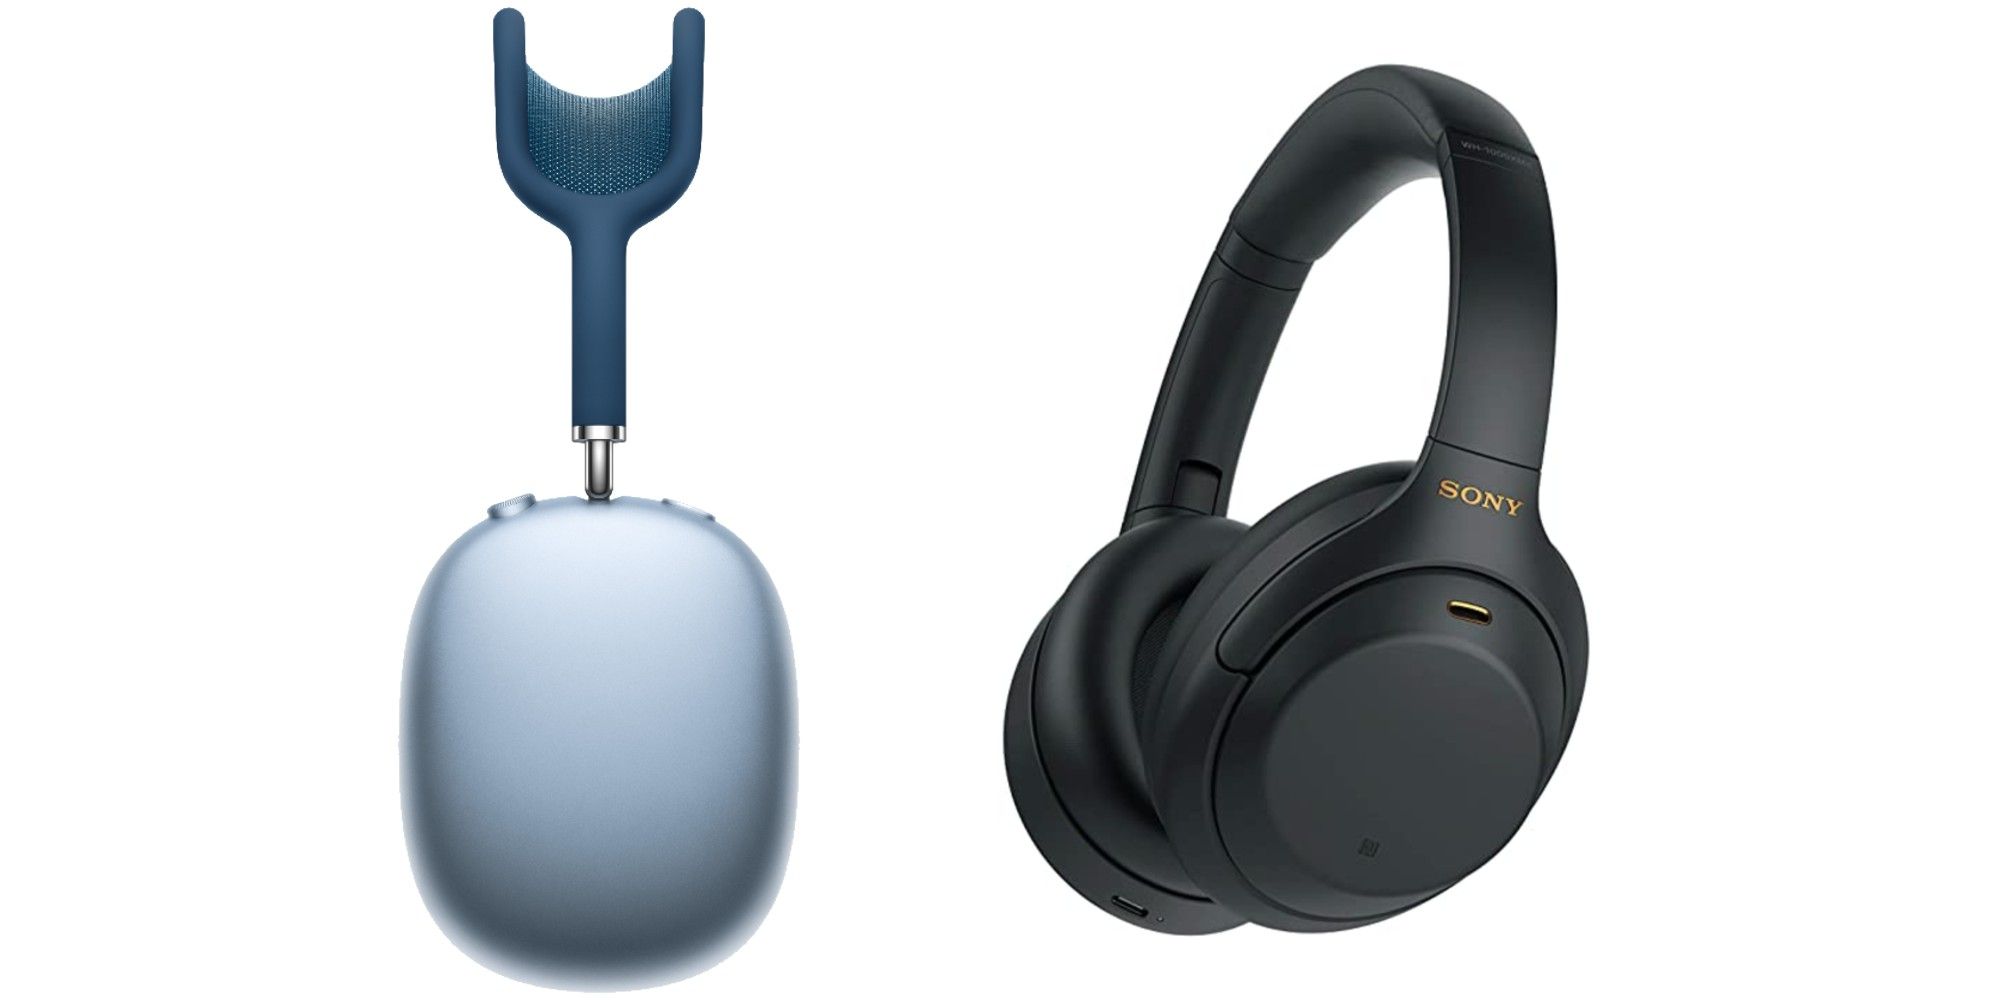 Sony vs. Apple headphones